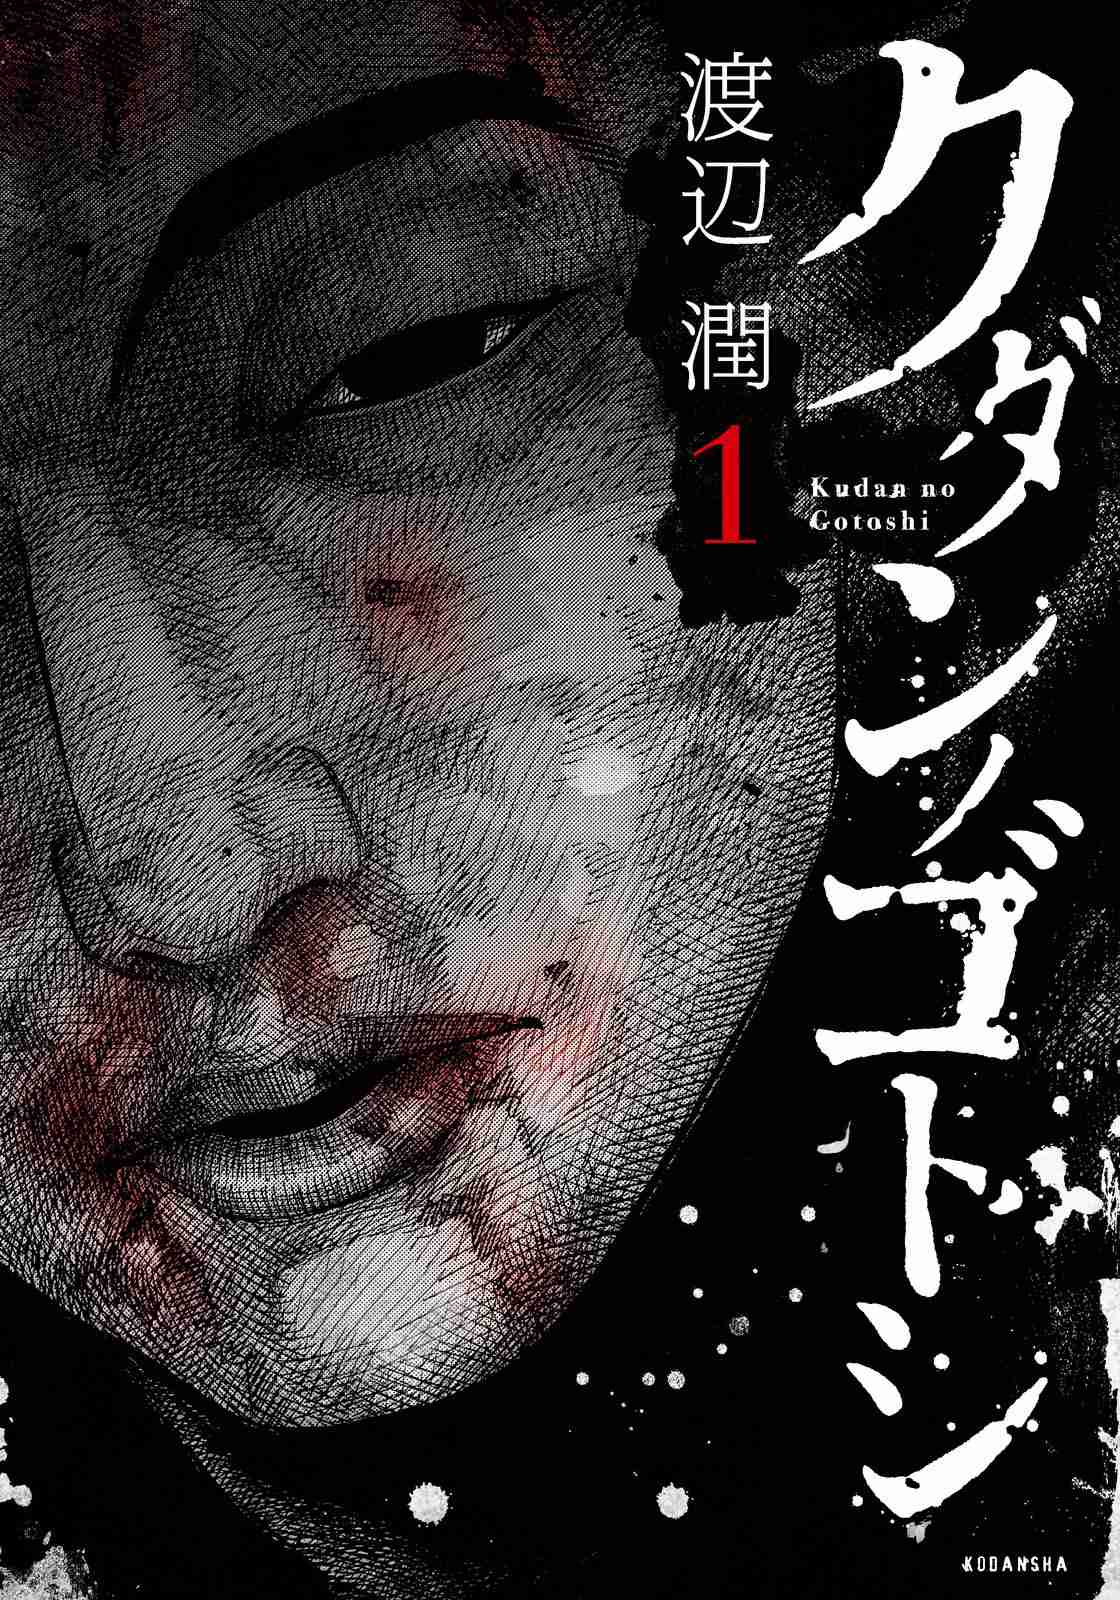 Kudan no Gotoshi Vol. 1 Ch. 4 Ayumi Baba <Part 1>